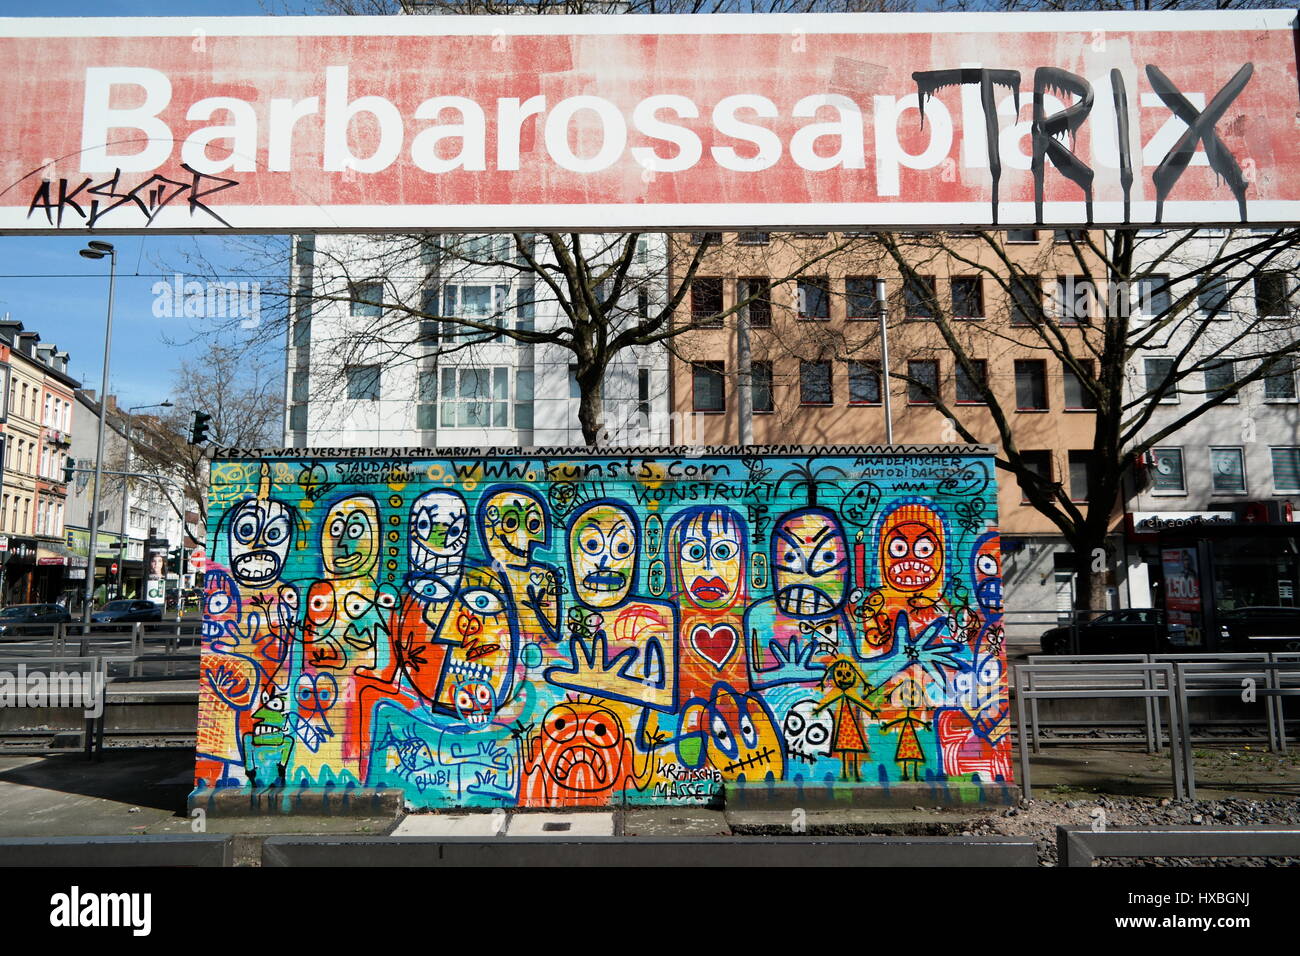 Haltestelle Barbarossaplatz in Köln (Colonia), Nordrhein-Westfalen, Deutschland, Wandbild von Marcus Krips Foto Stock